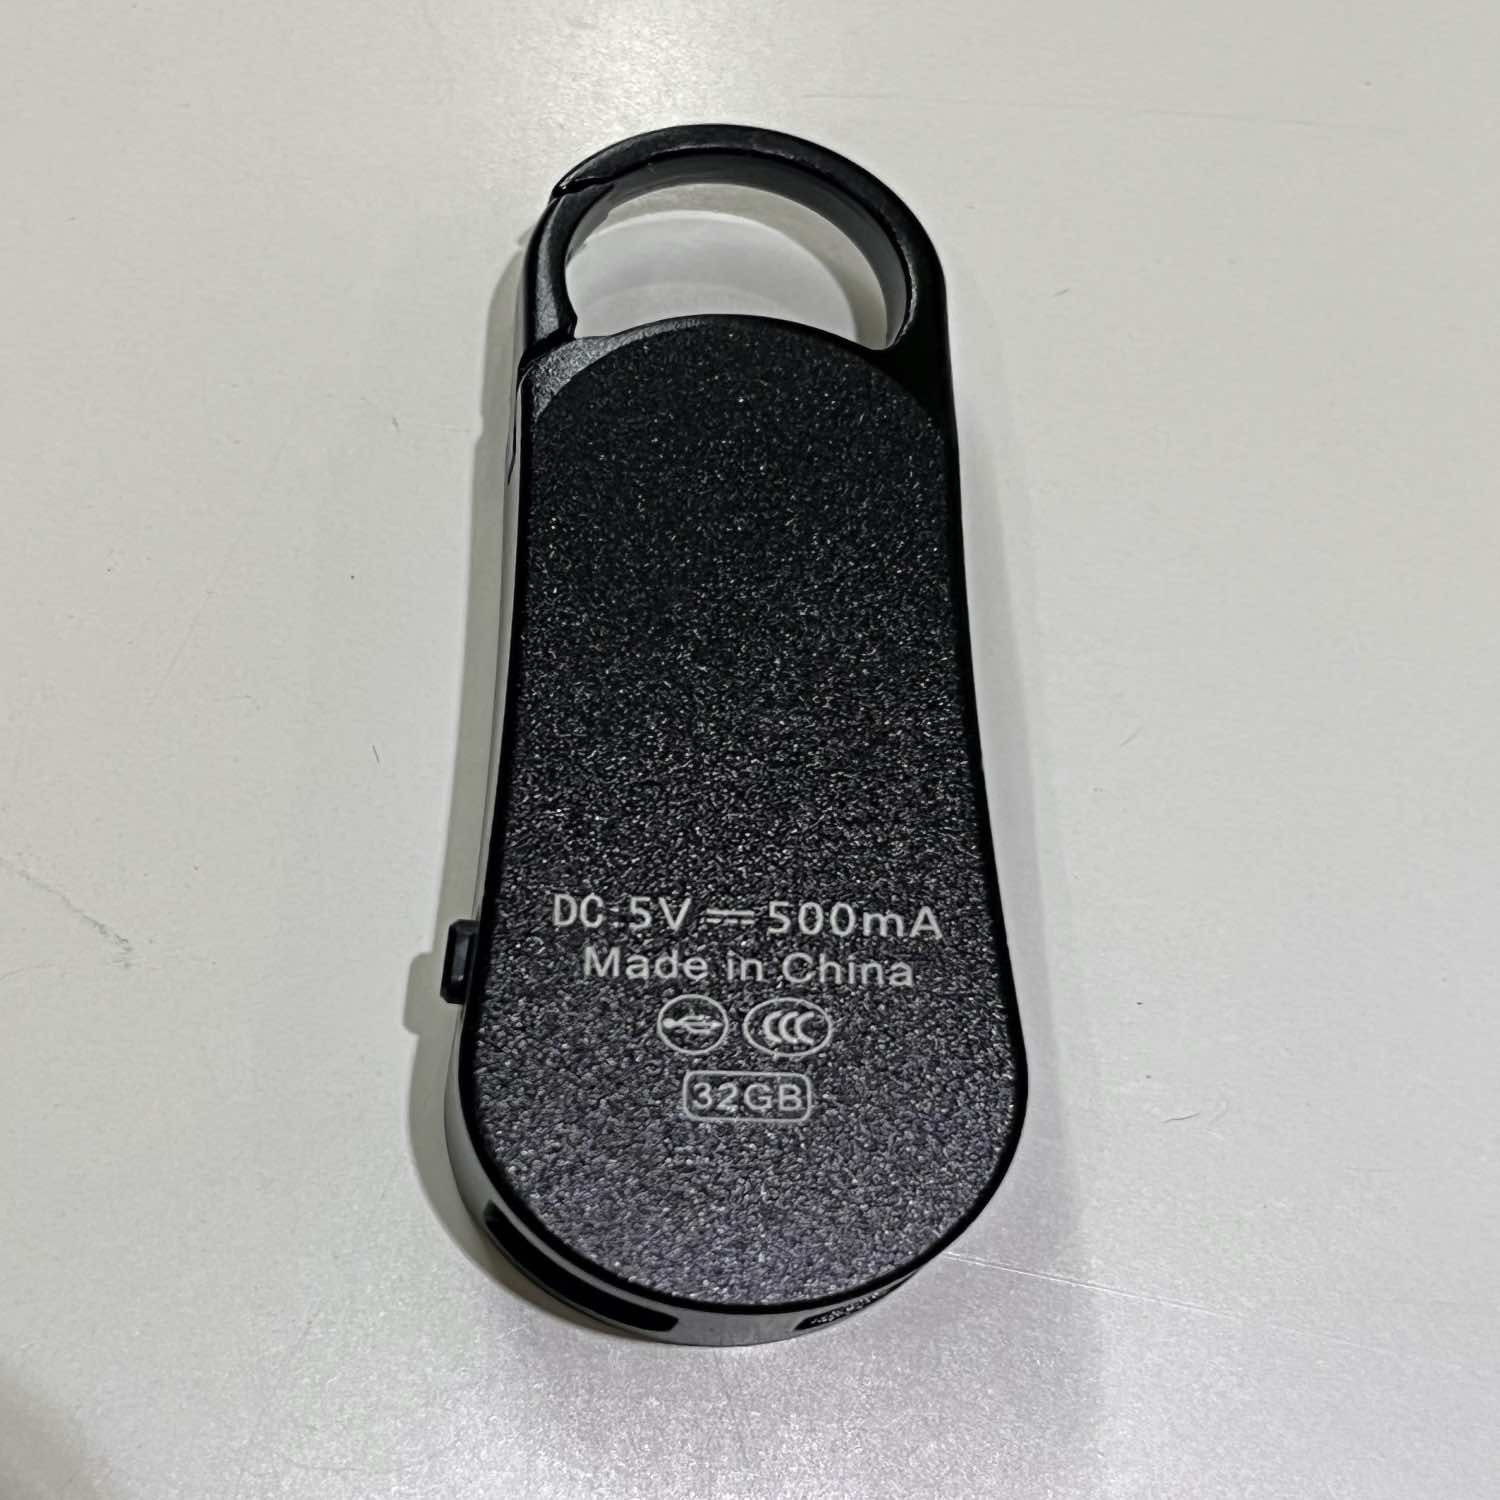 Digital Voice Recorder in Keychain